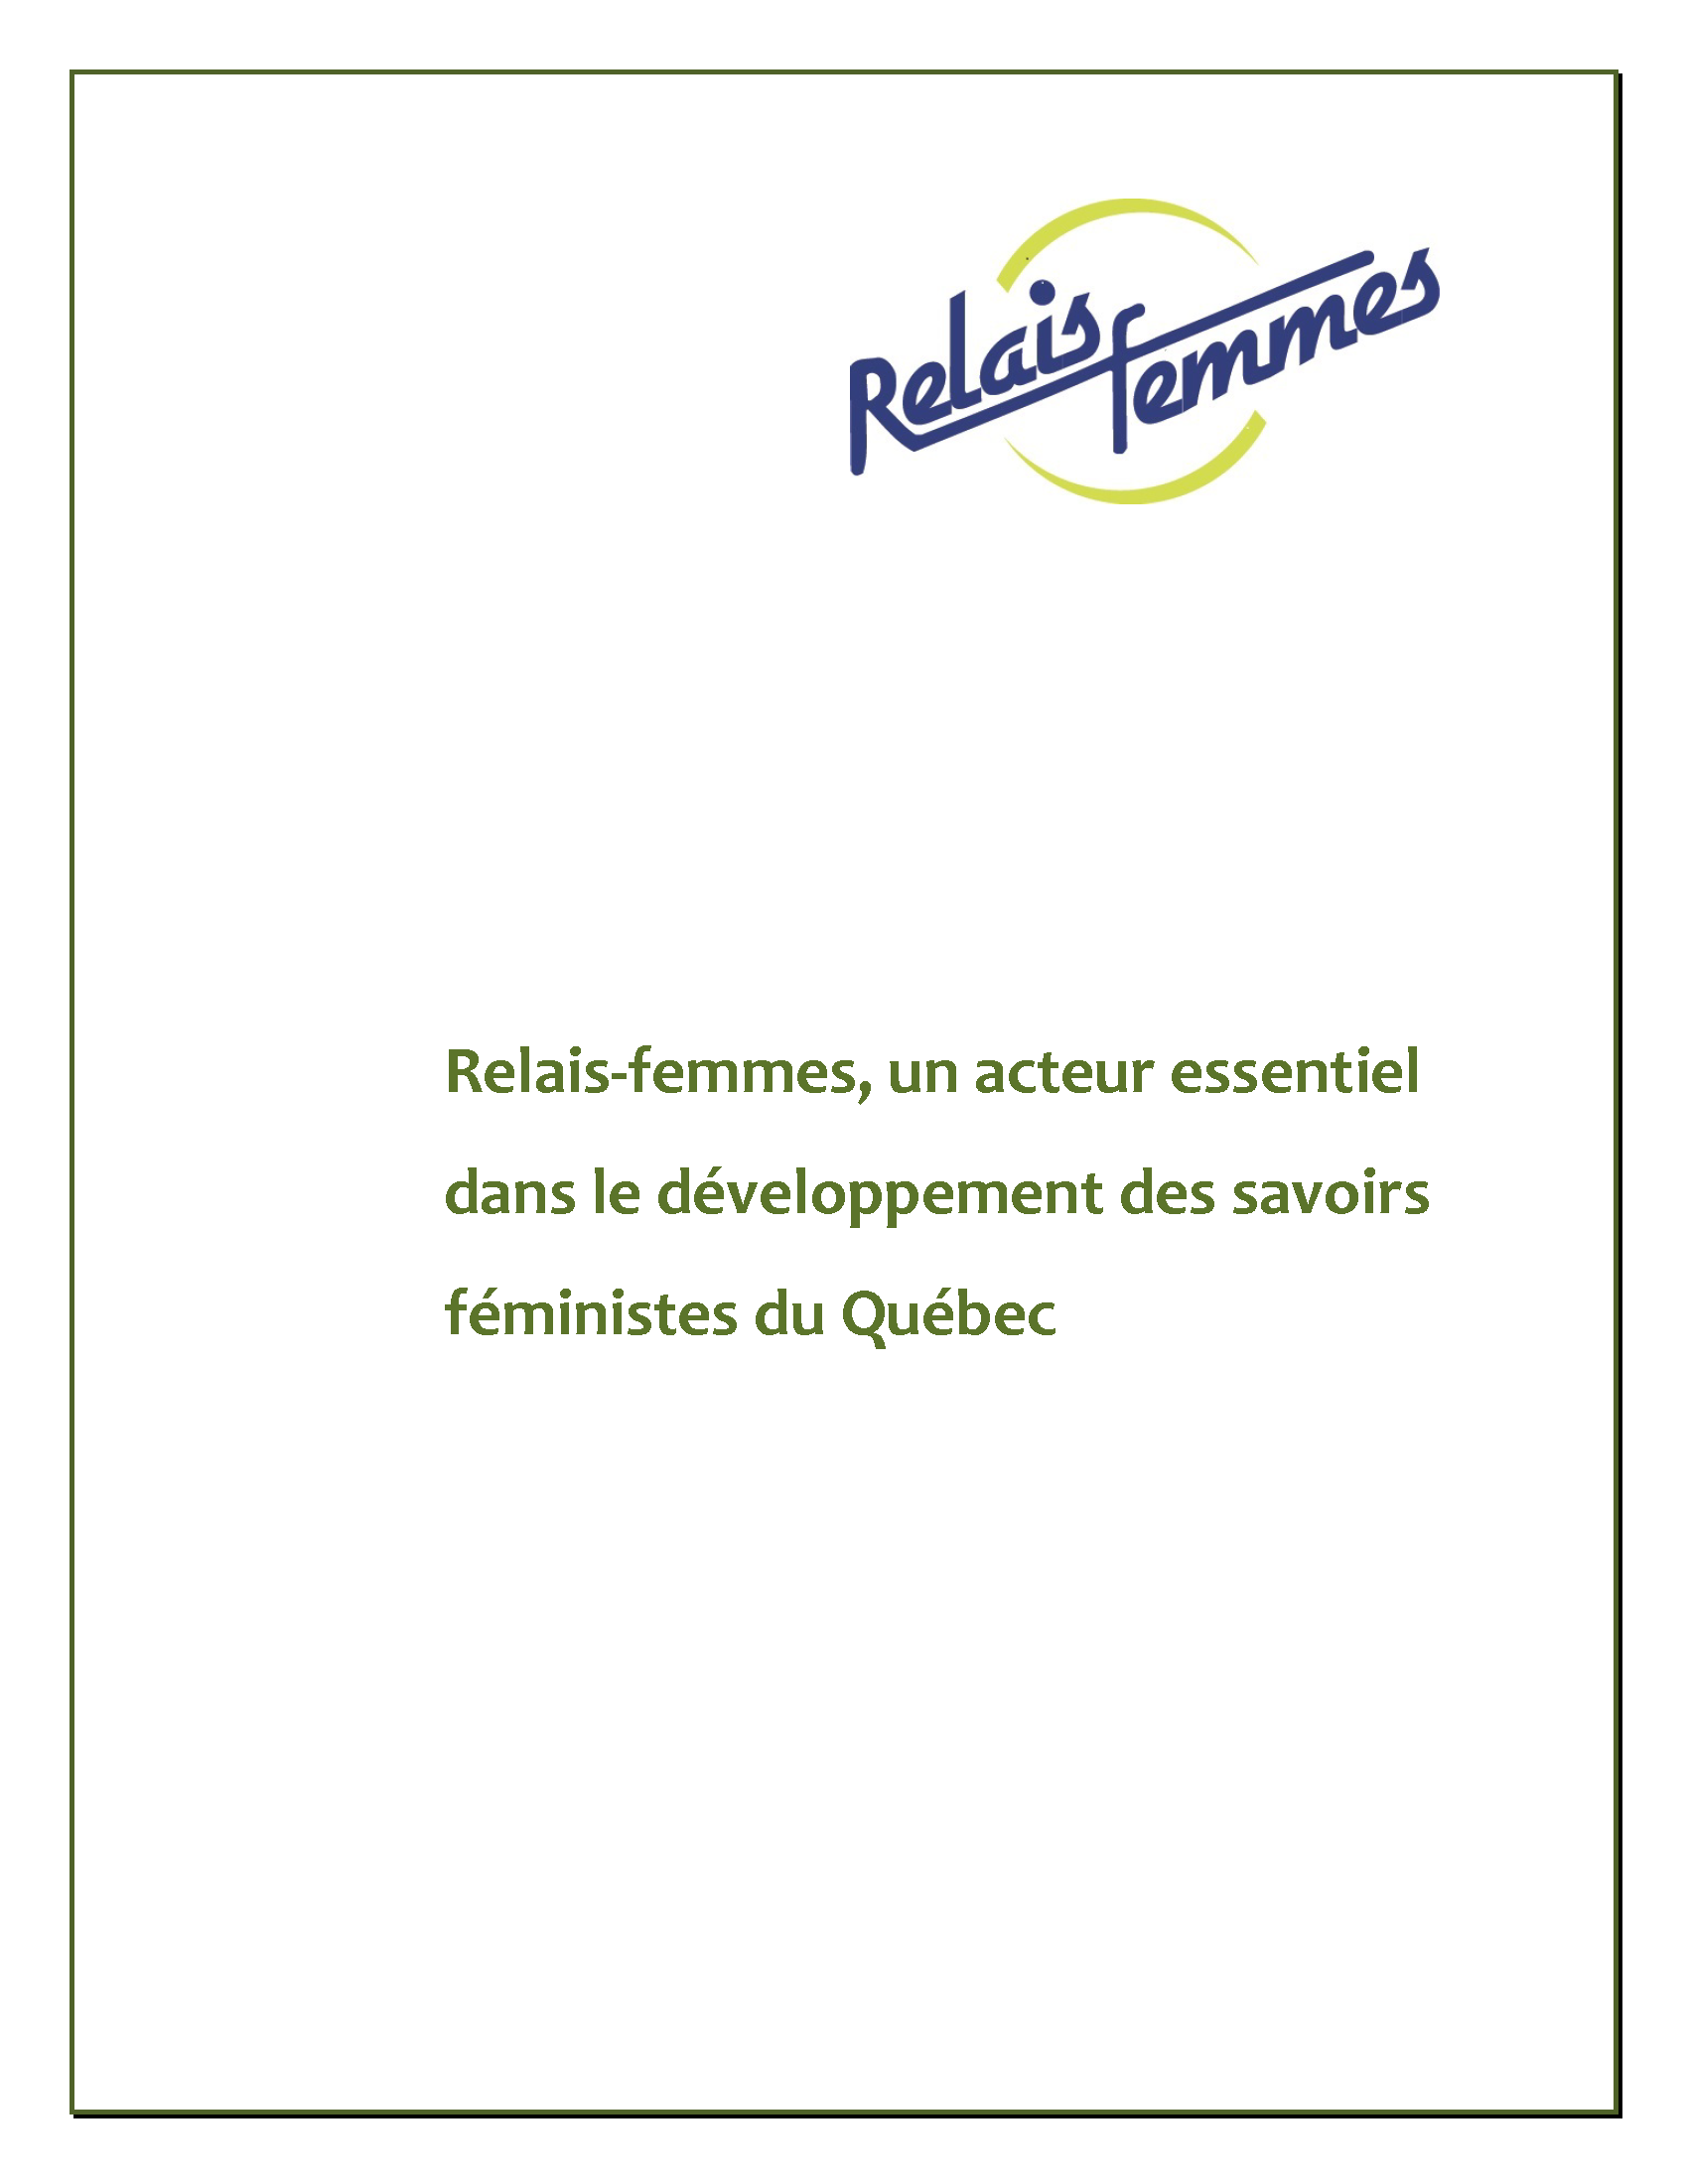 Couverture de la publication : Relais-femmes, un acteur essentiel dans le développement des savoirs féministes au Québec